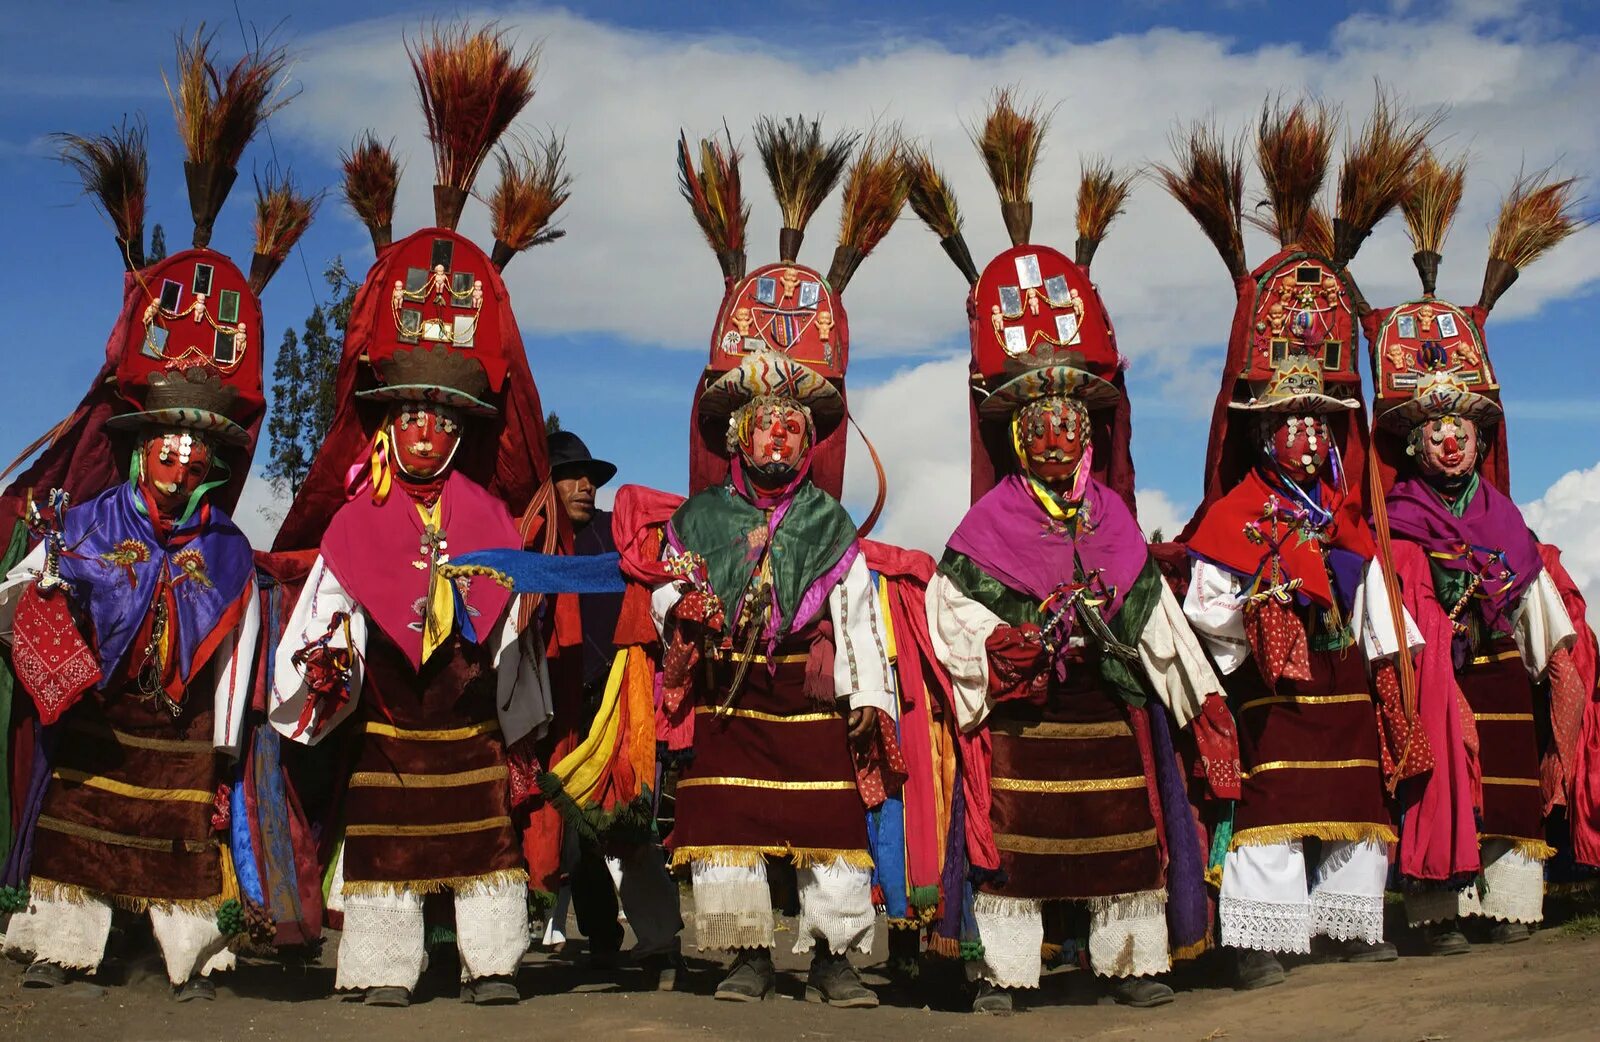 Население Перу перуанцы. Чили население индейцы. Традиции Перу. Перу культура и традиции.